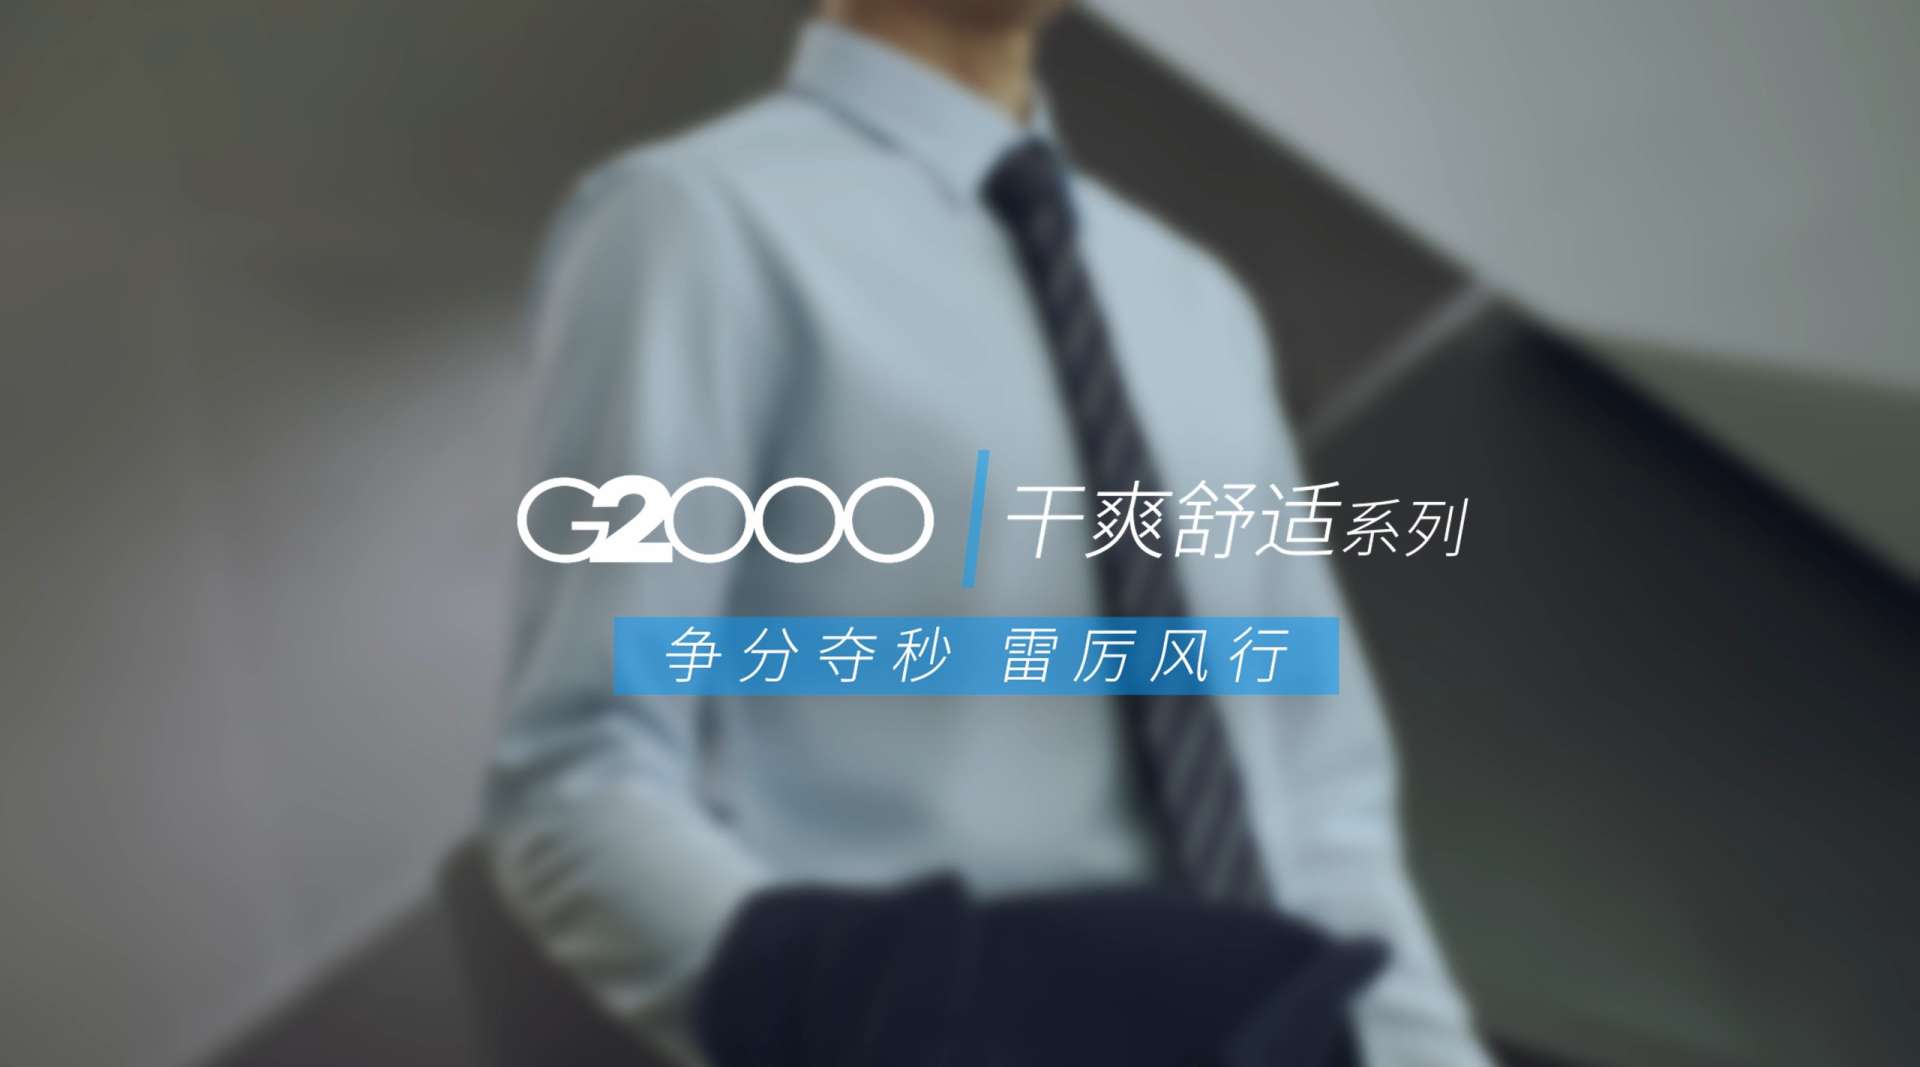 G2000-干爽舒适系列-争分夺秒 雷厉风行--服饰广告